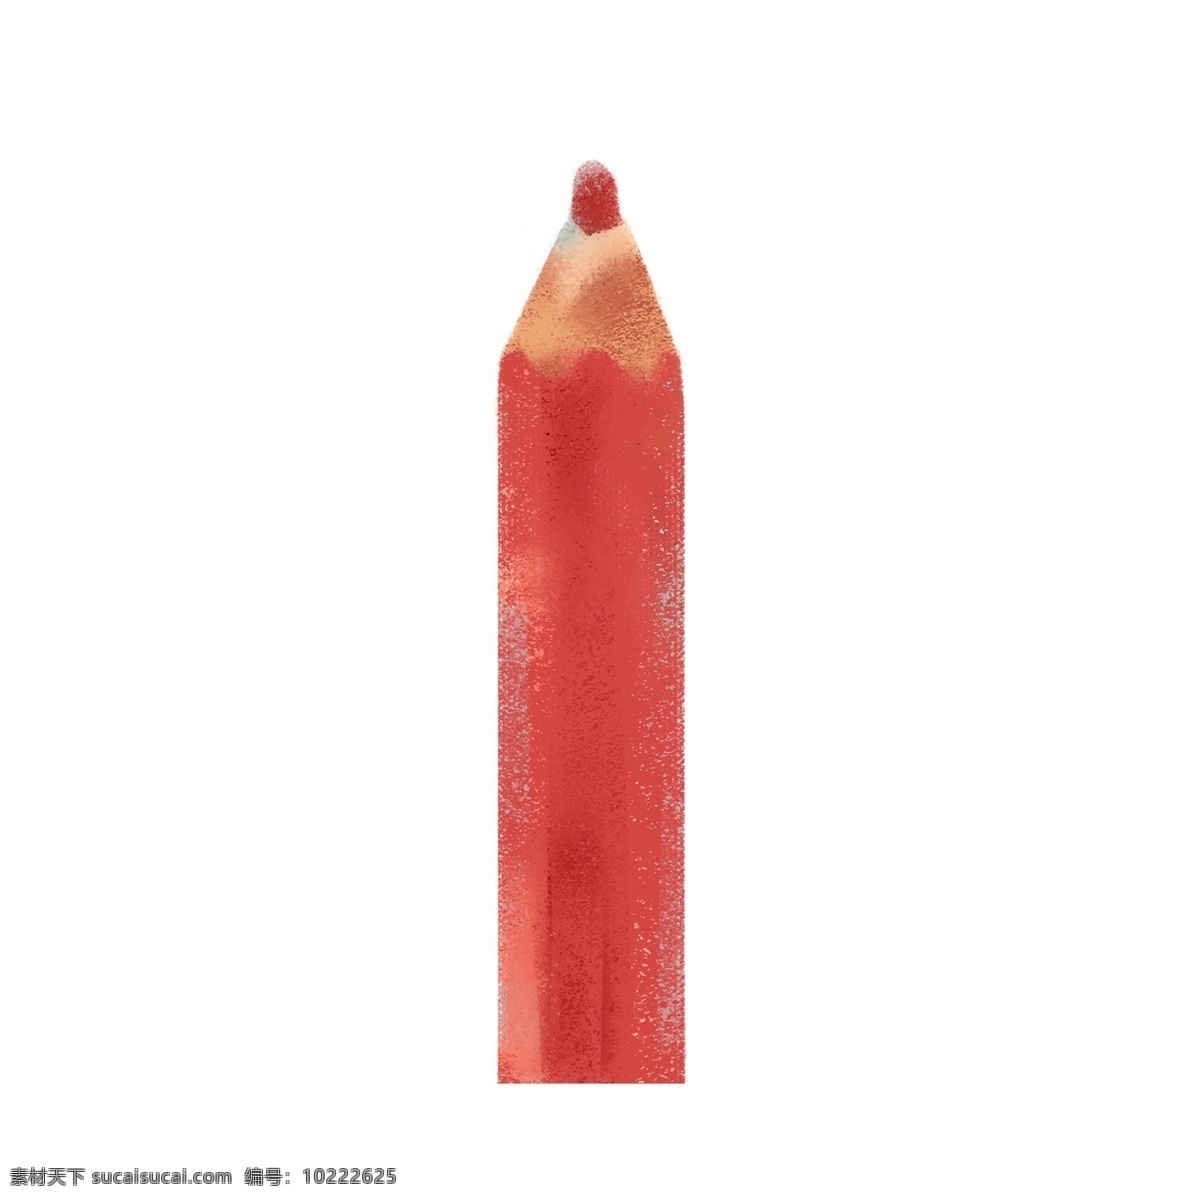 文具用品 红色 铅笔 儿童文具用品 带橡皮的铅笔 卡通手绘 学习用具 红色铅笔